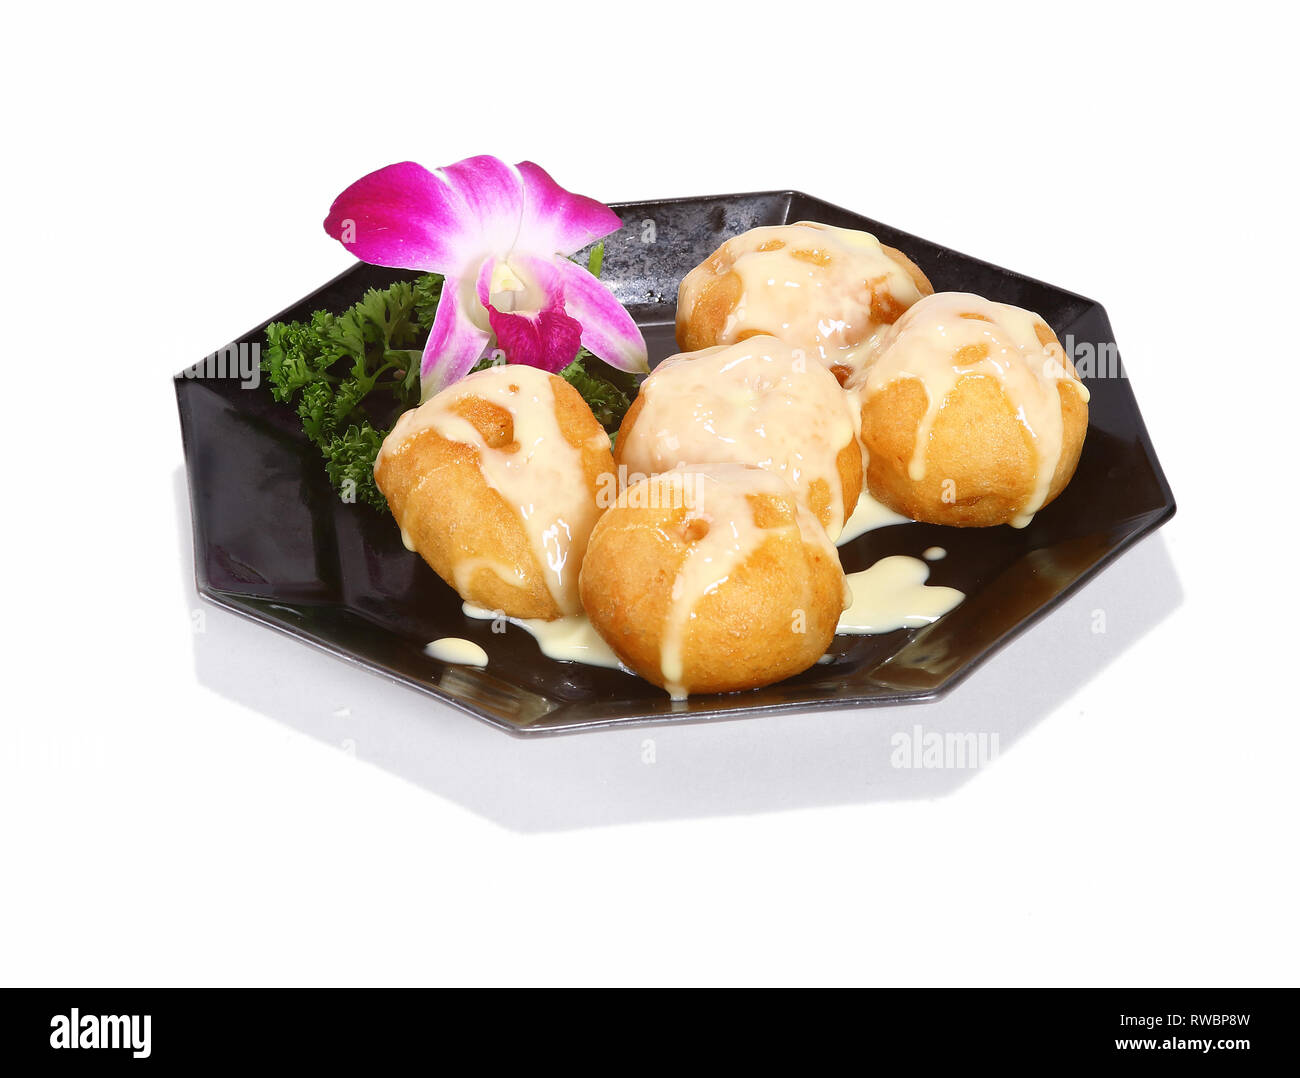 Cinese / Asian dessert servito su una piastra nera. Foto Stock